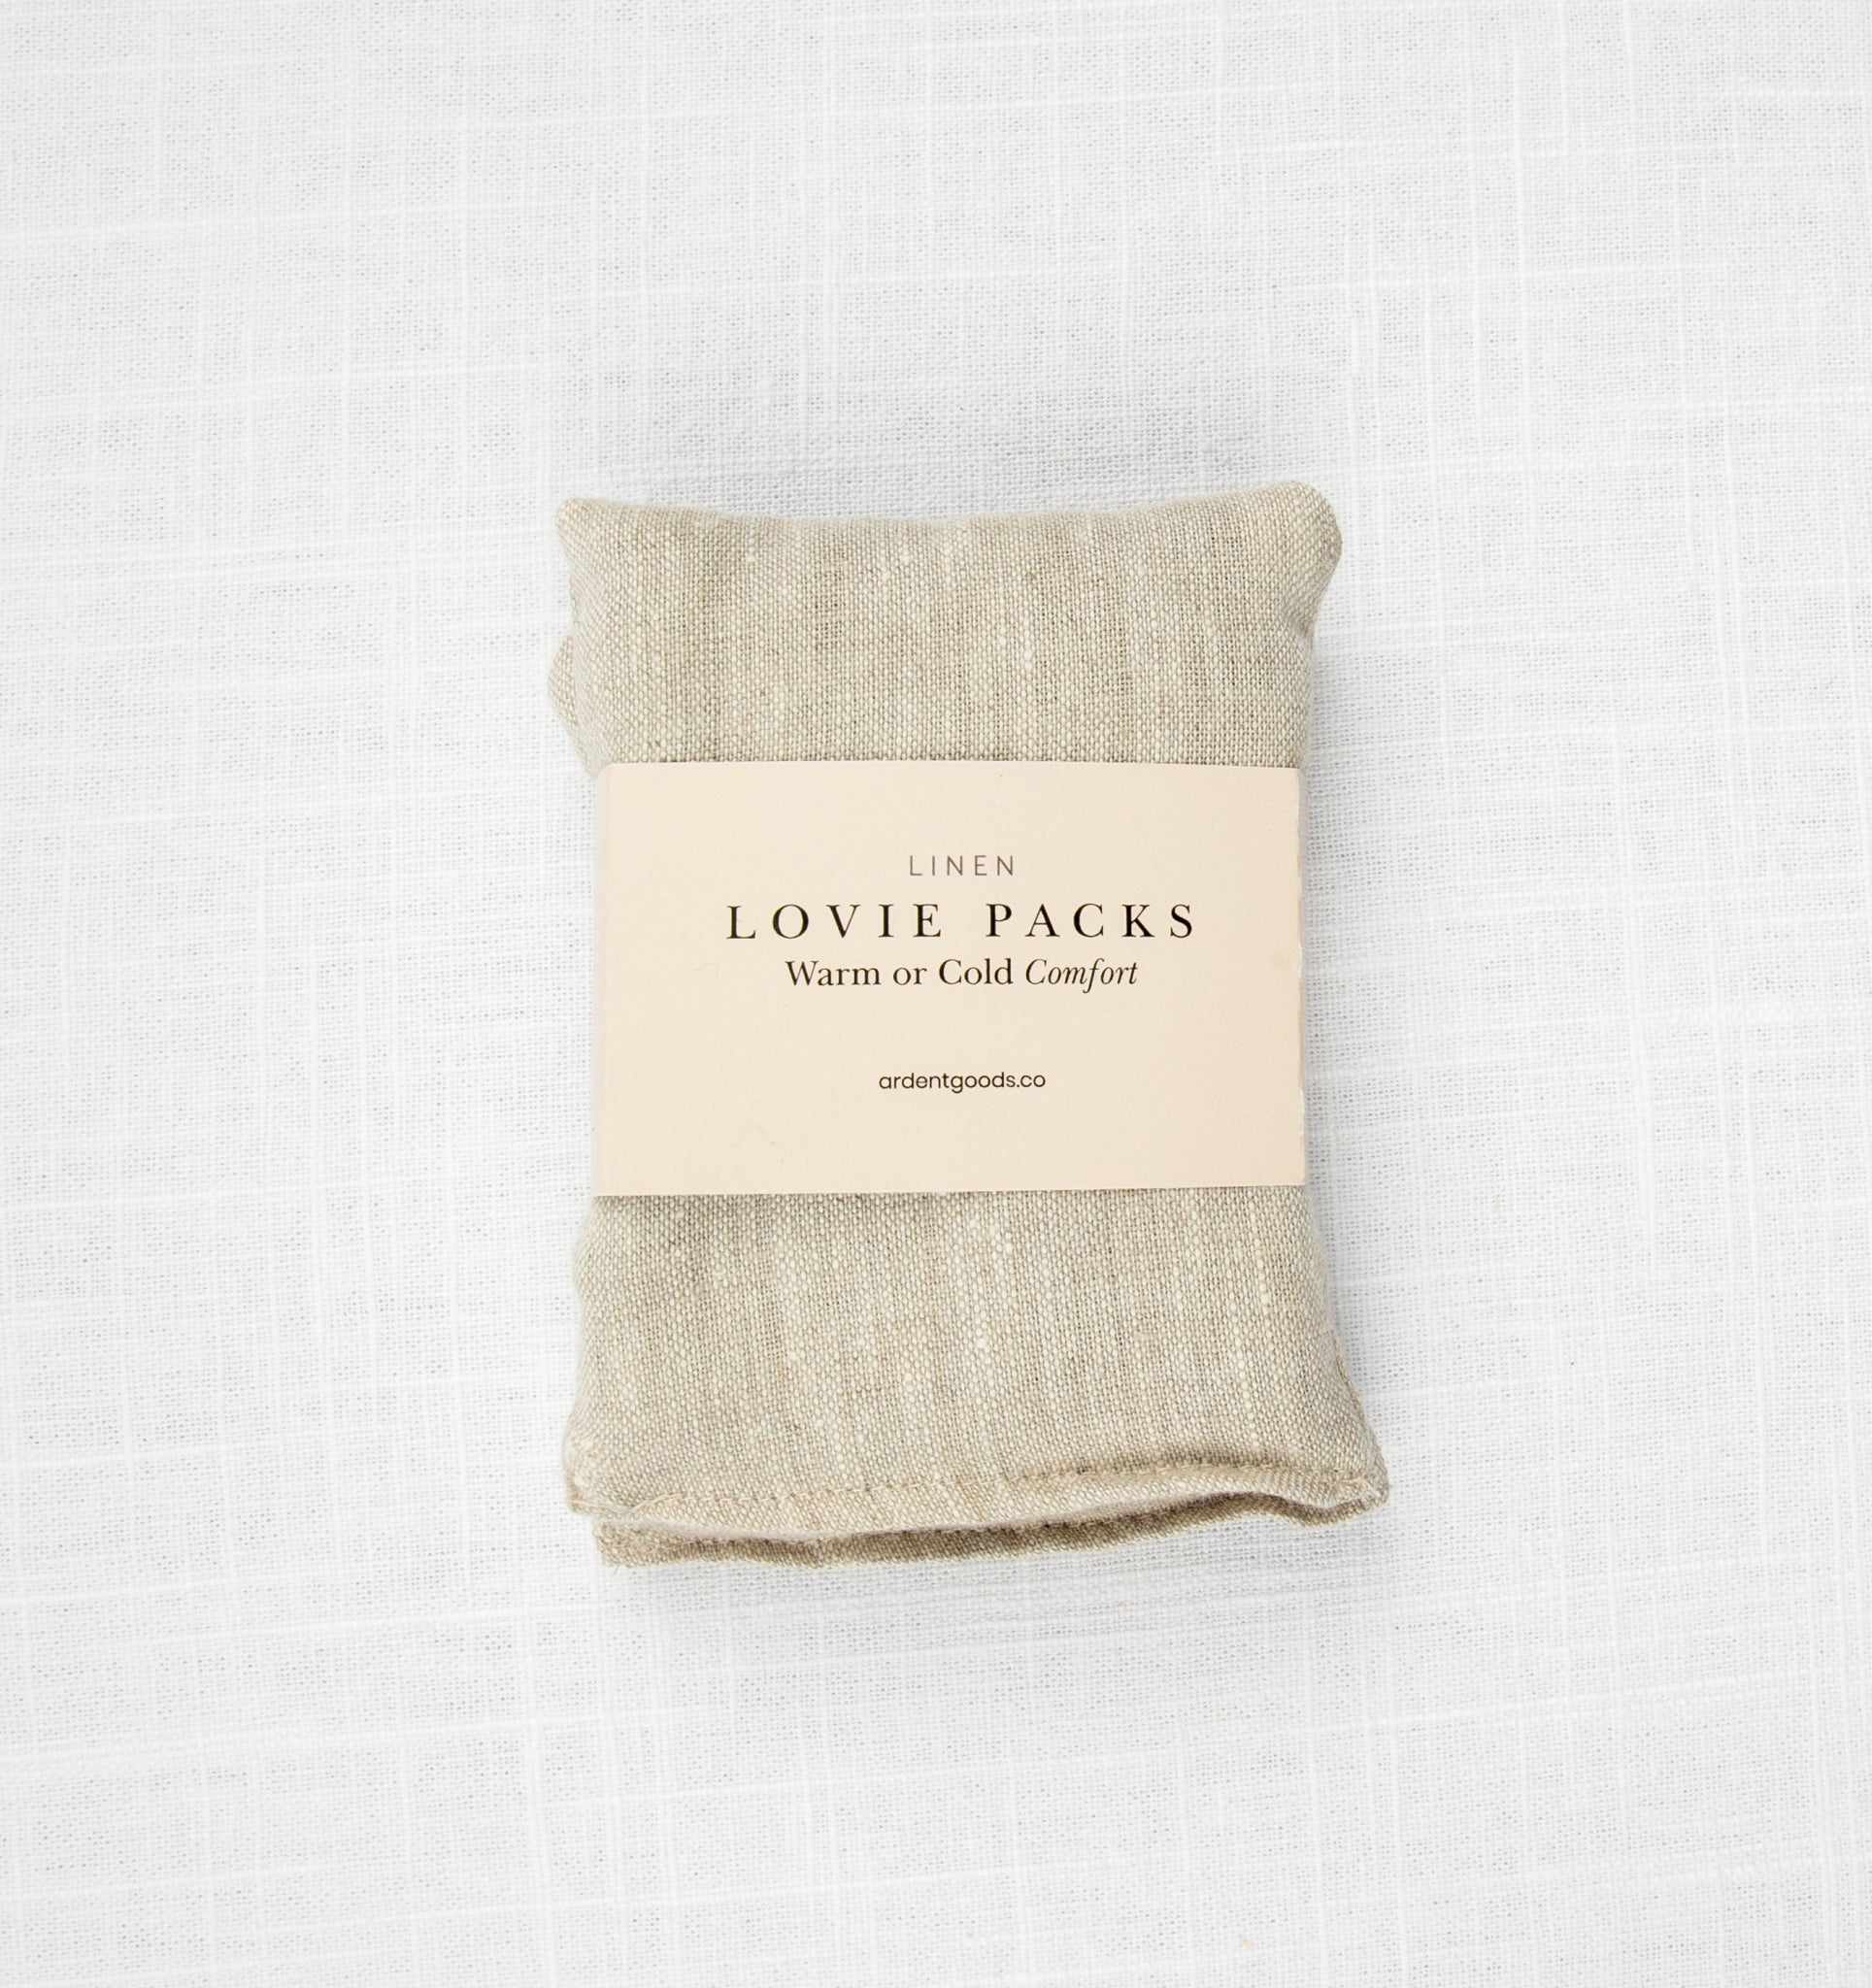 Lovie Packs – take heart shop